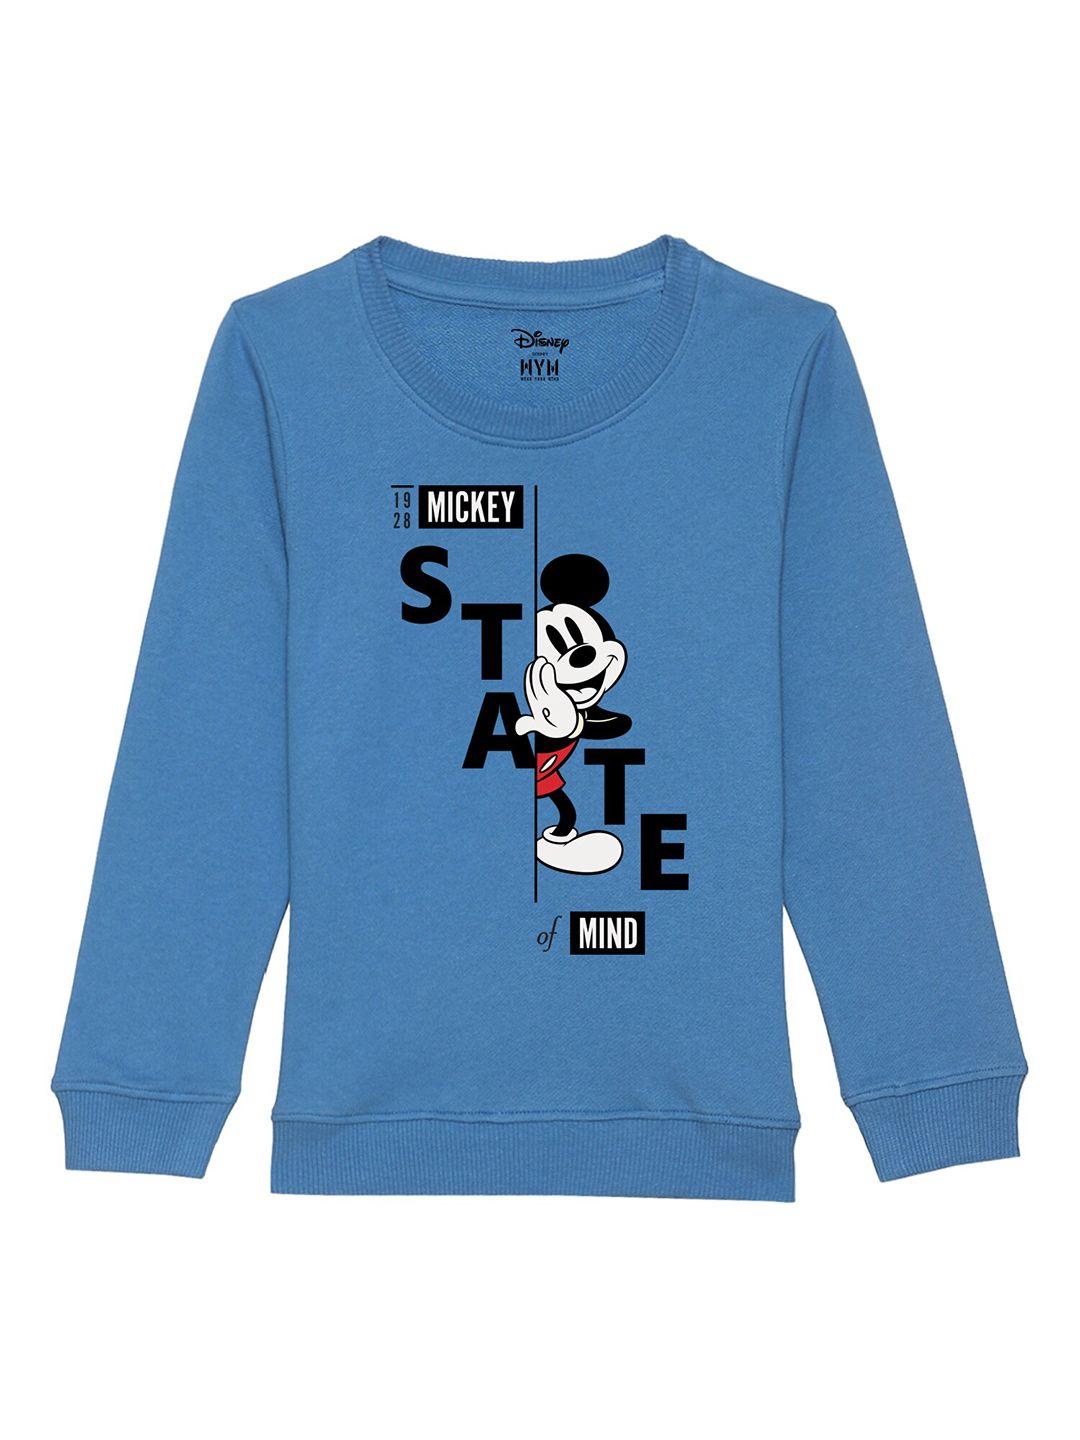 Disney by Wear Your Mind Boys Blue Printed Sweatshirt